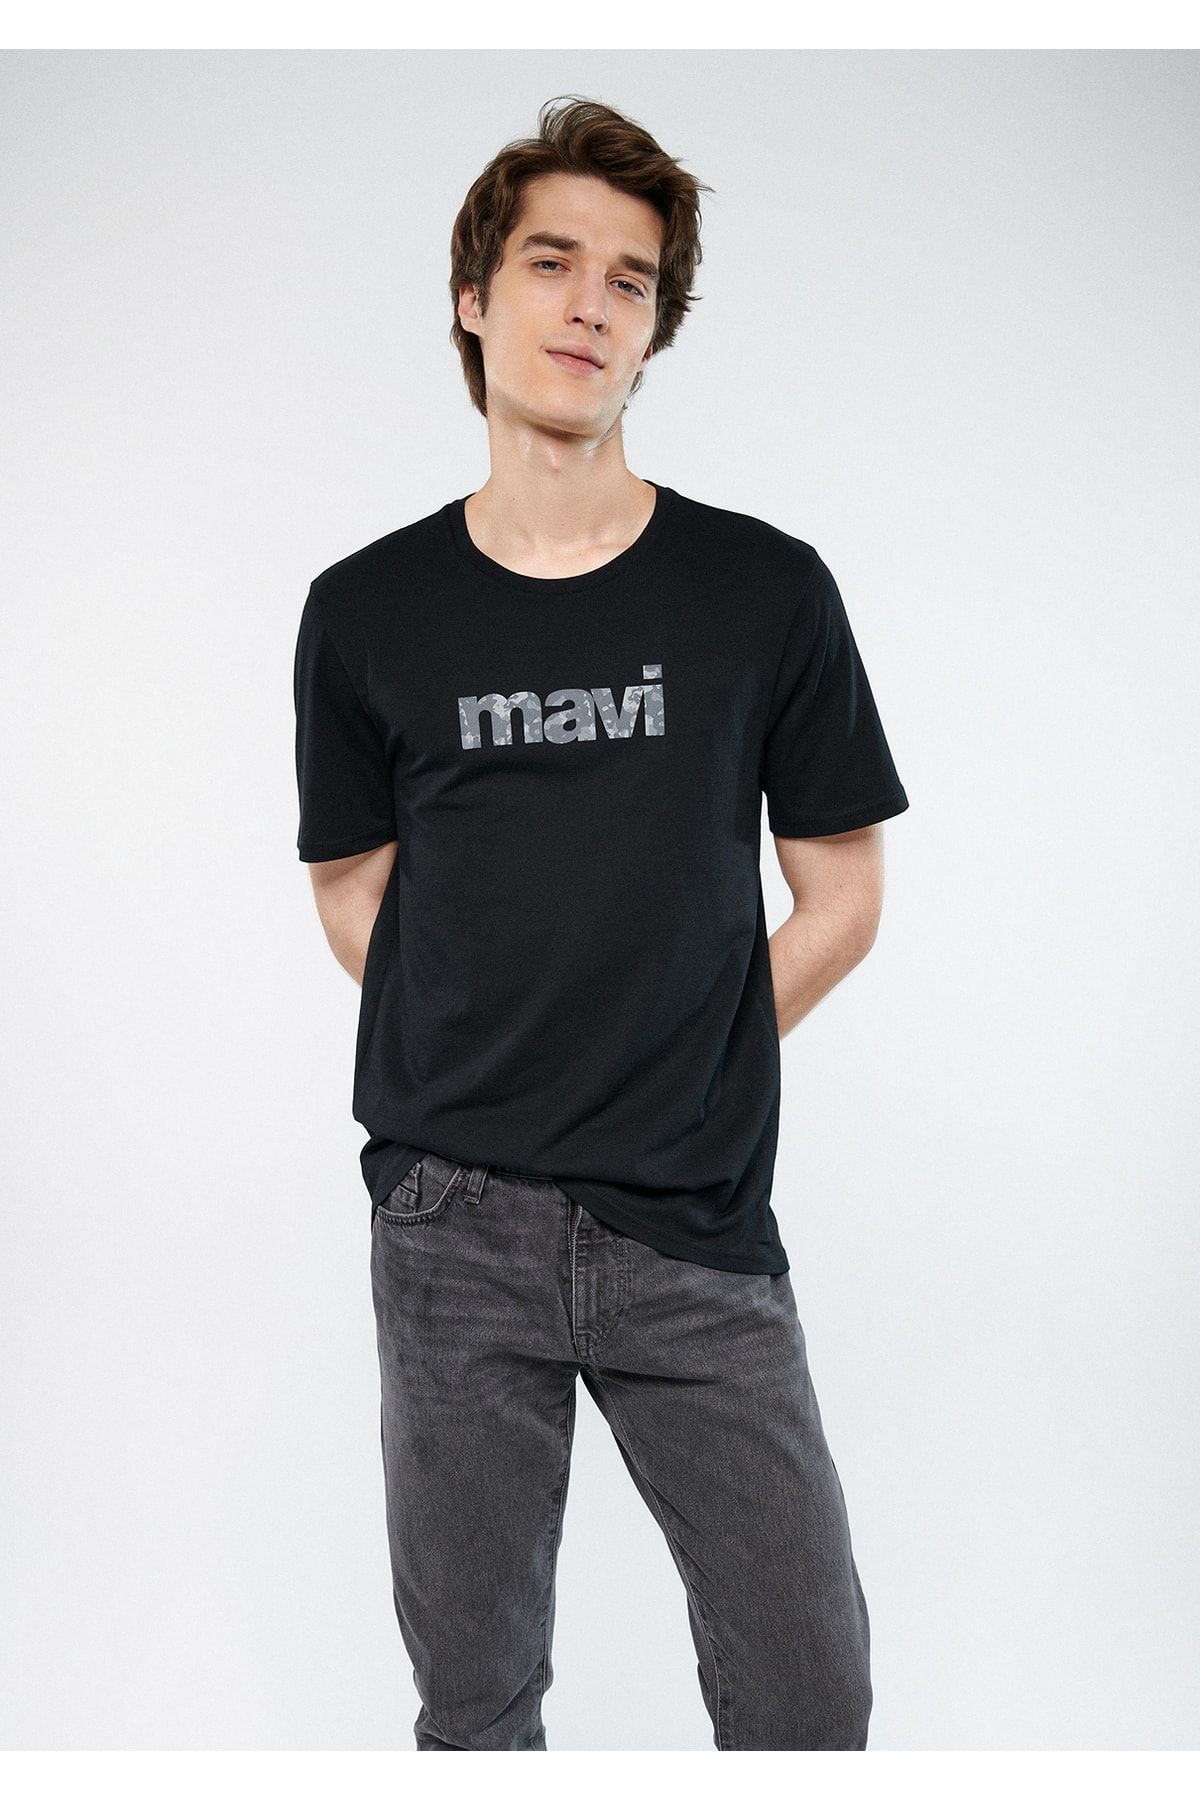 تیشرت سیاه مدل اسلیم فیت طرحدار ماوی Mavi (ساخت ترکیه)